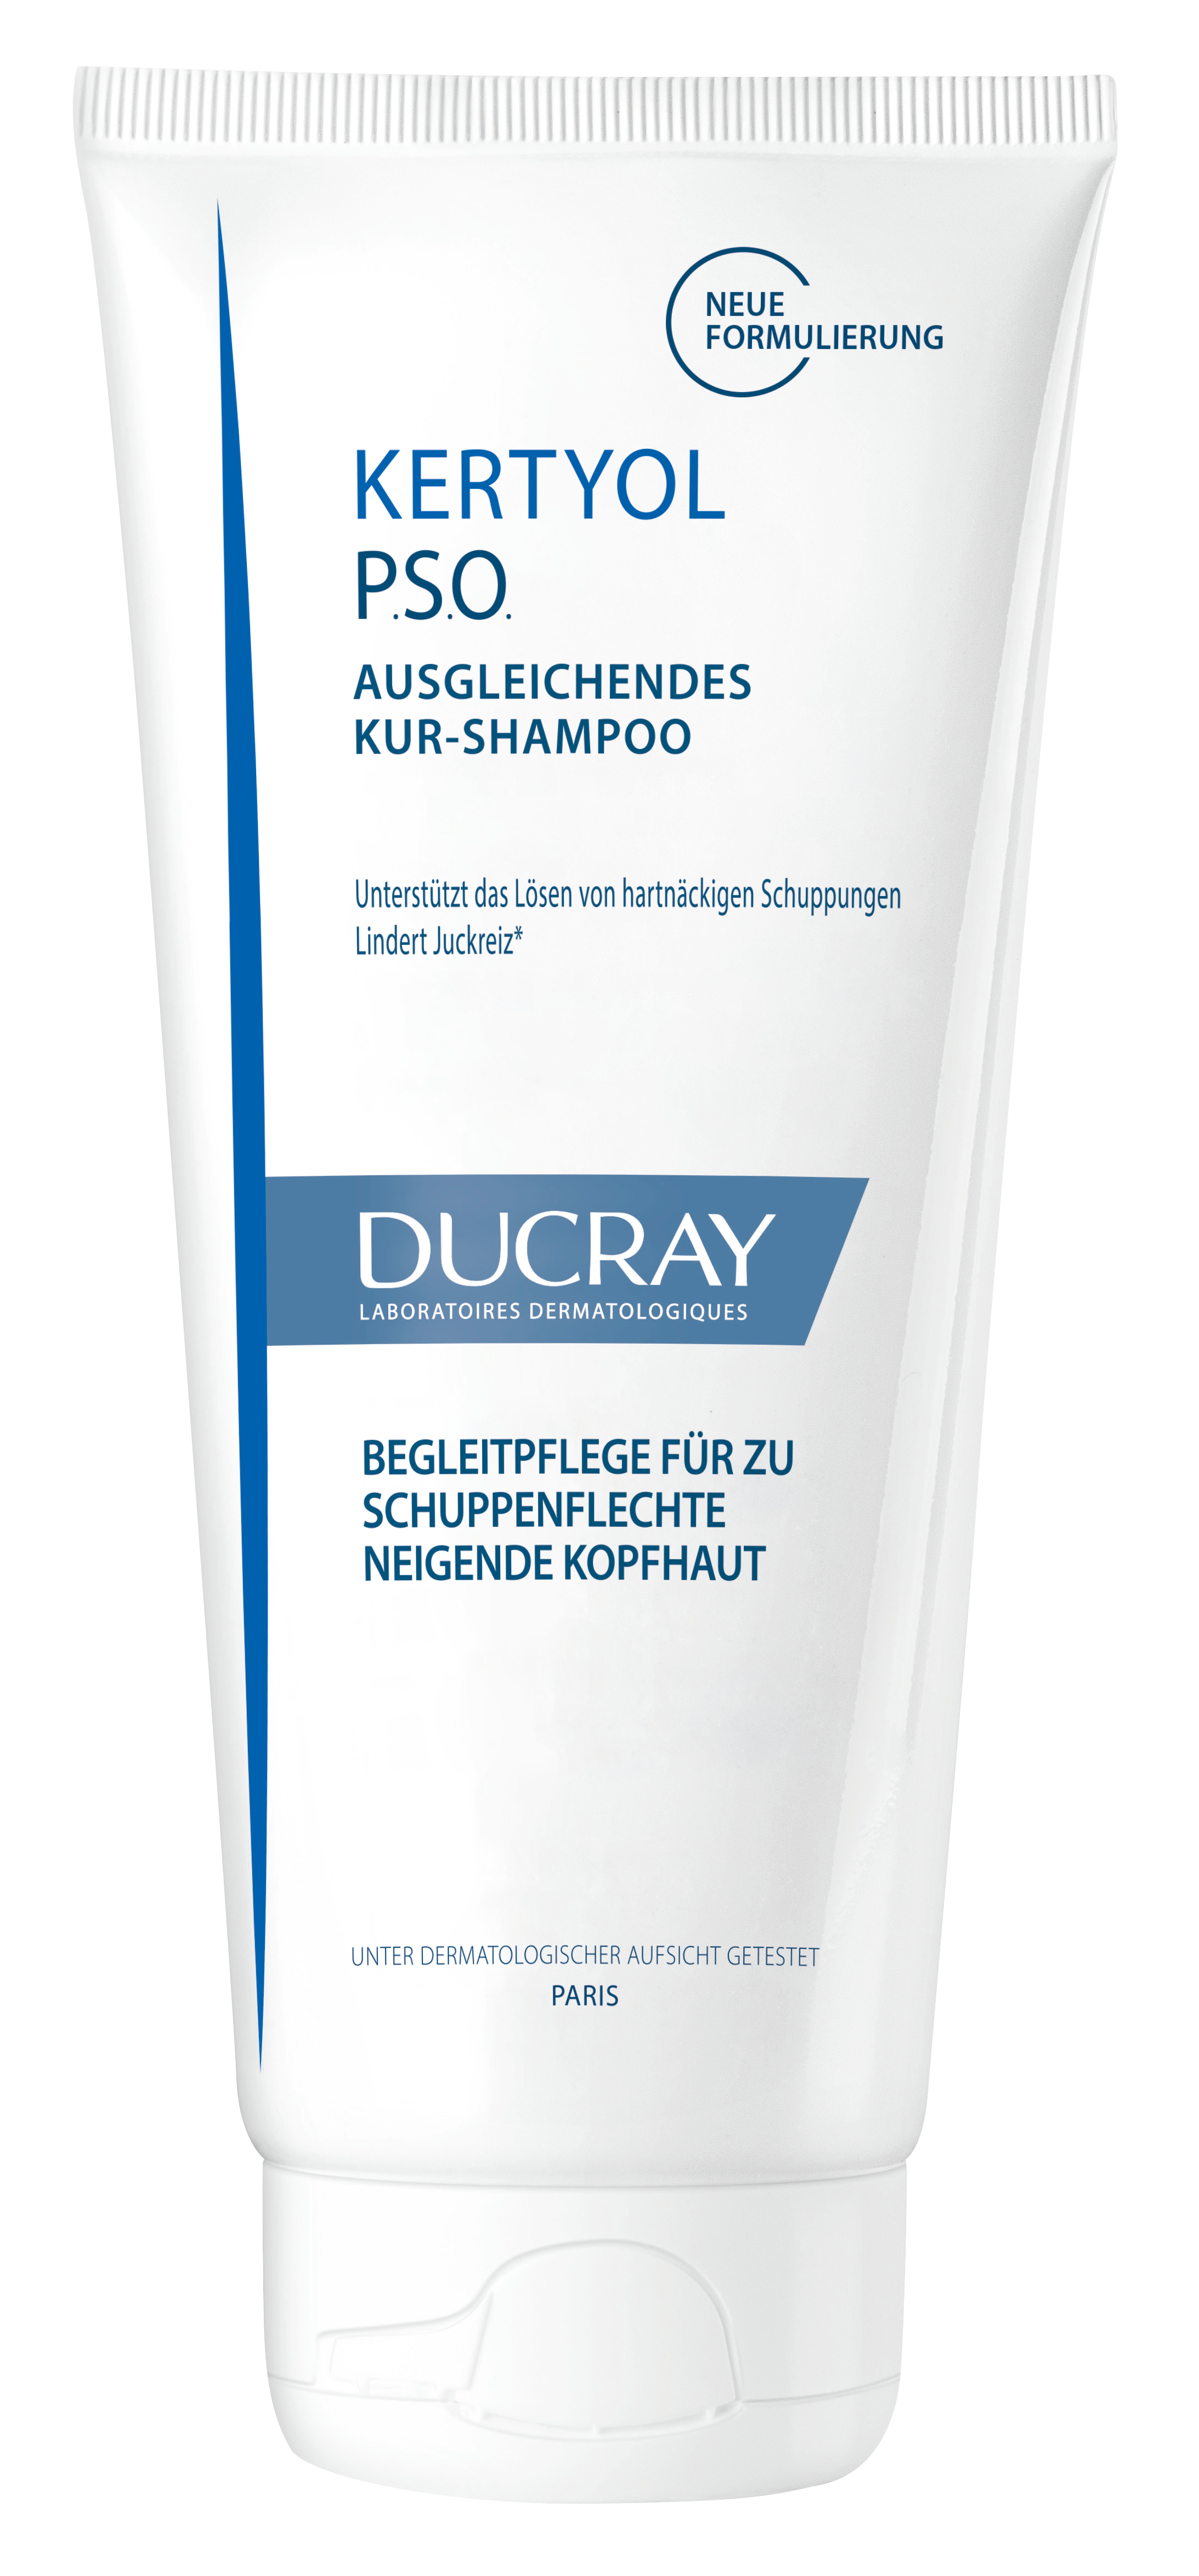 Ducray – Ausgleichendes Kur-Shampoo – Shampoo gegen Juckreiz – Kertyol P.S.O.